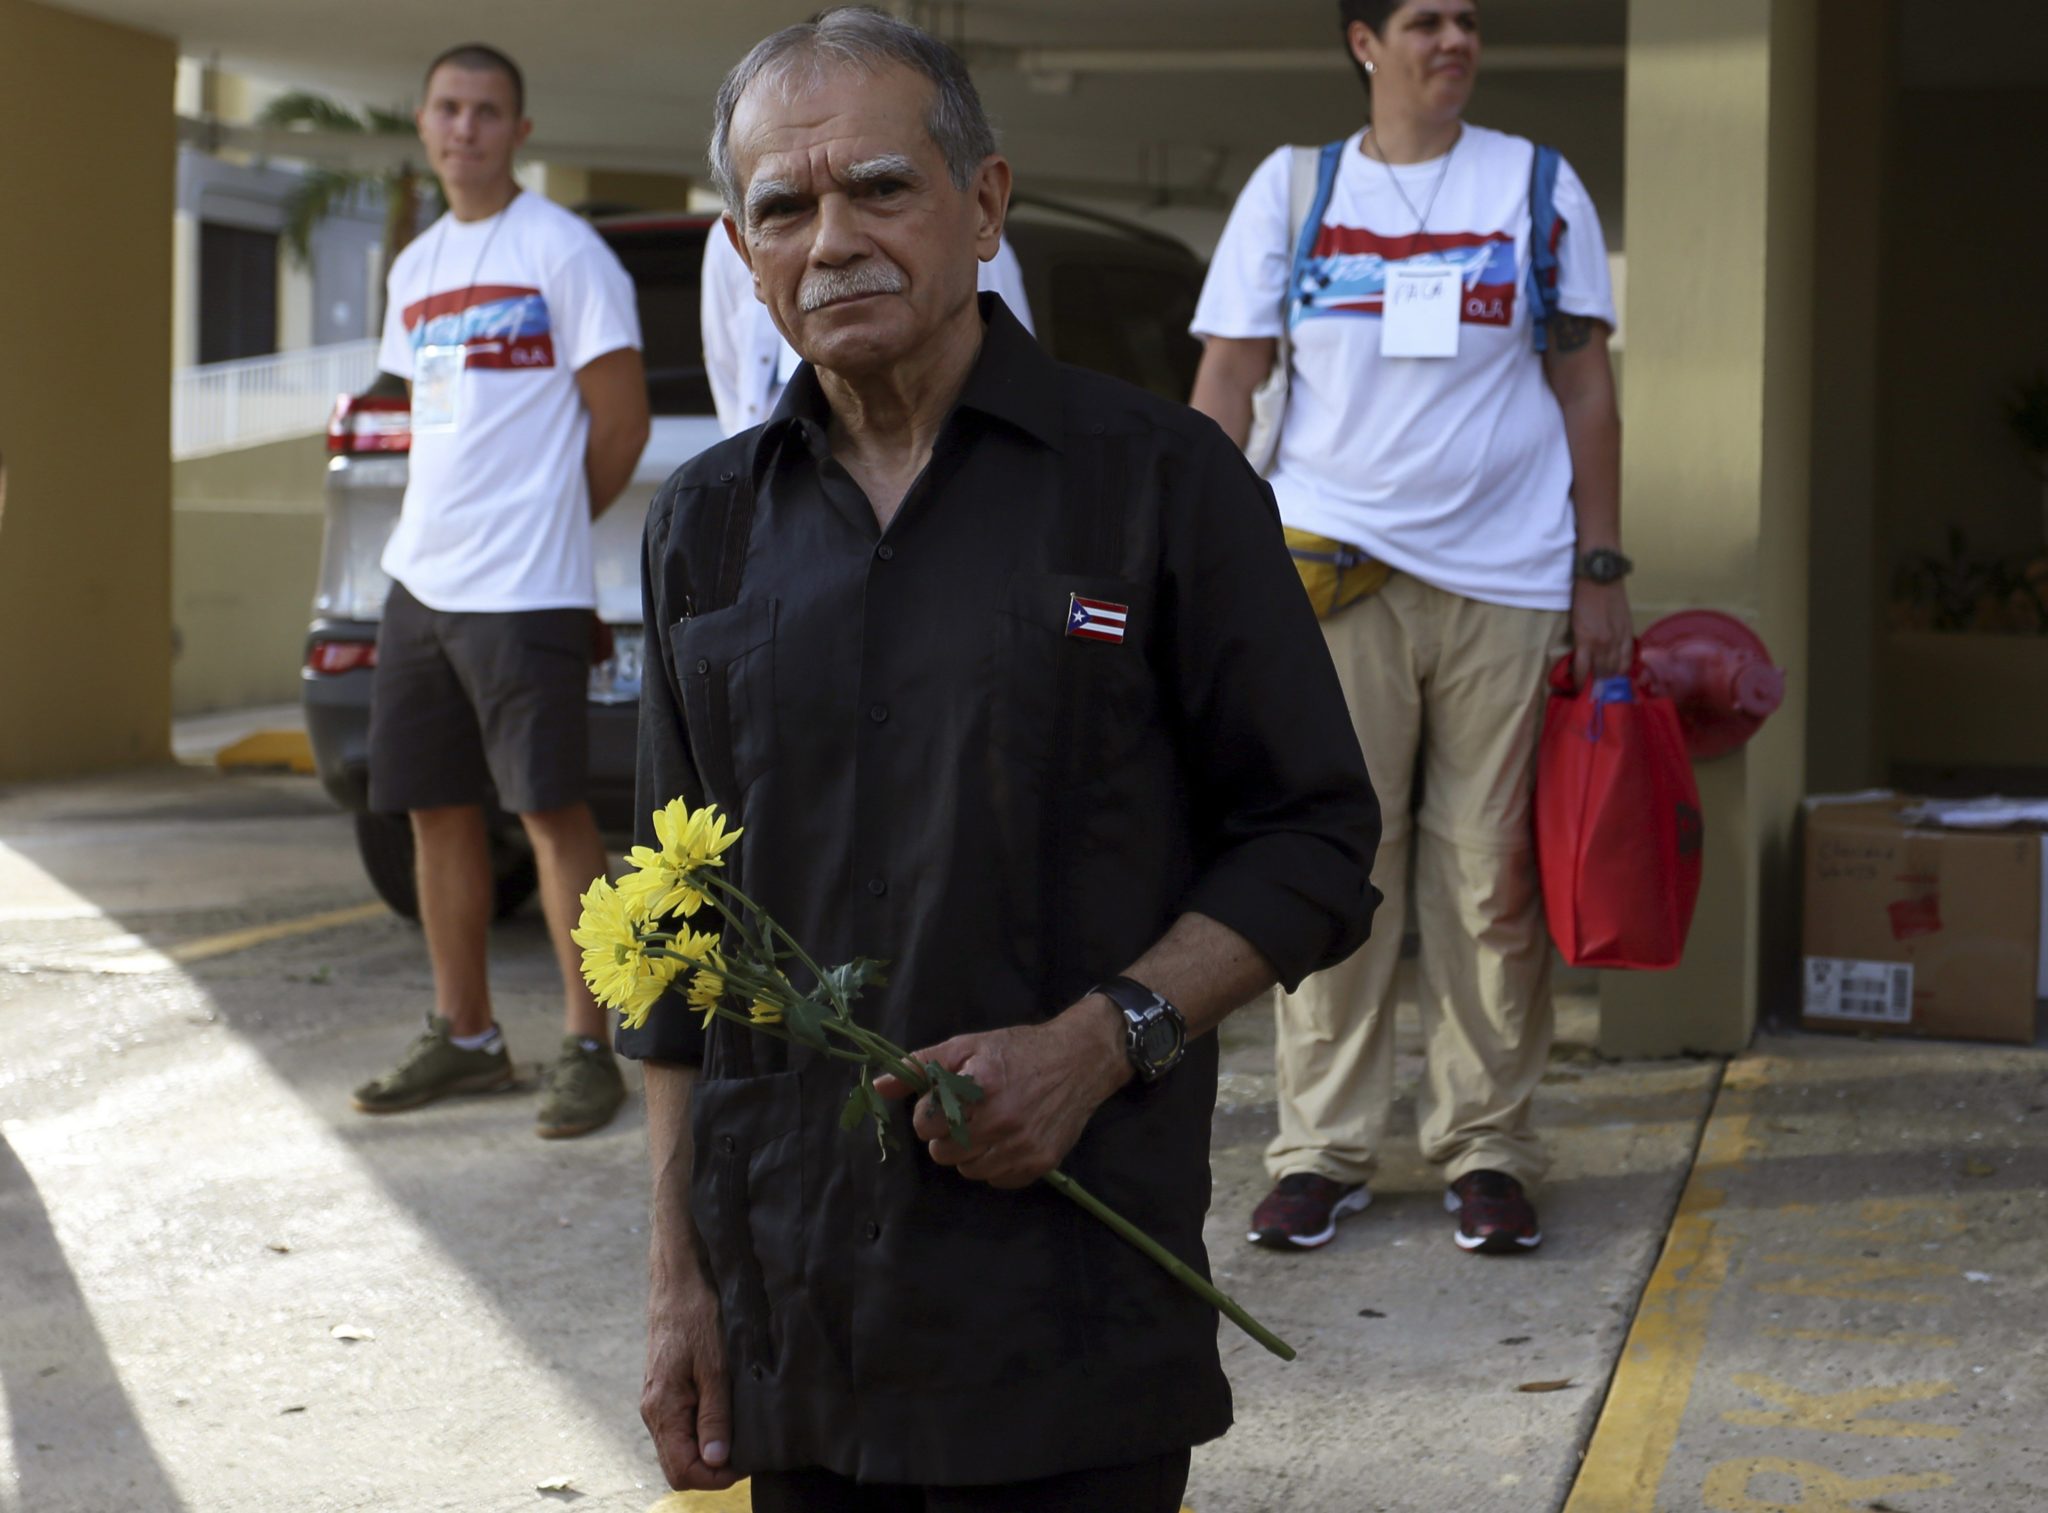 Puerto Rico: wieloletni członek opozycji rządowej, działacz na rzecz praw człowieka - Oscar Lopez Rivera został uwolniony z więzienia w San Juan (foto. PAP/EPA/Thais Llorca)